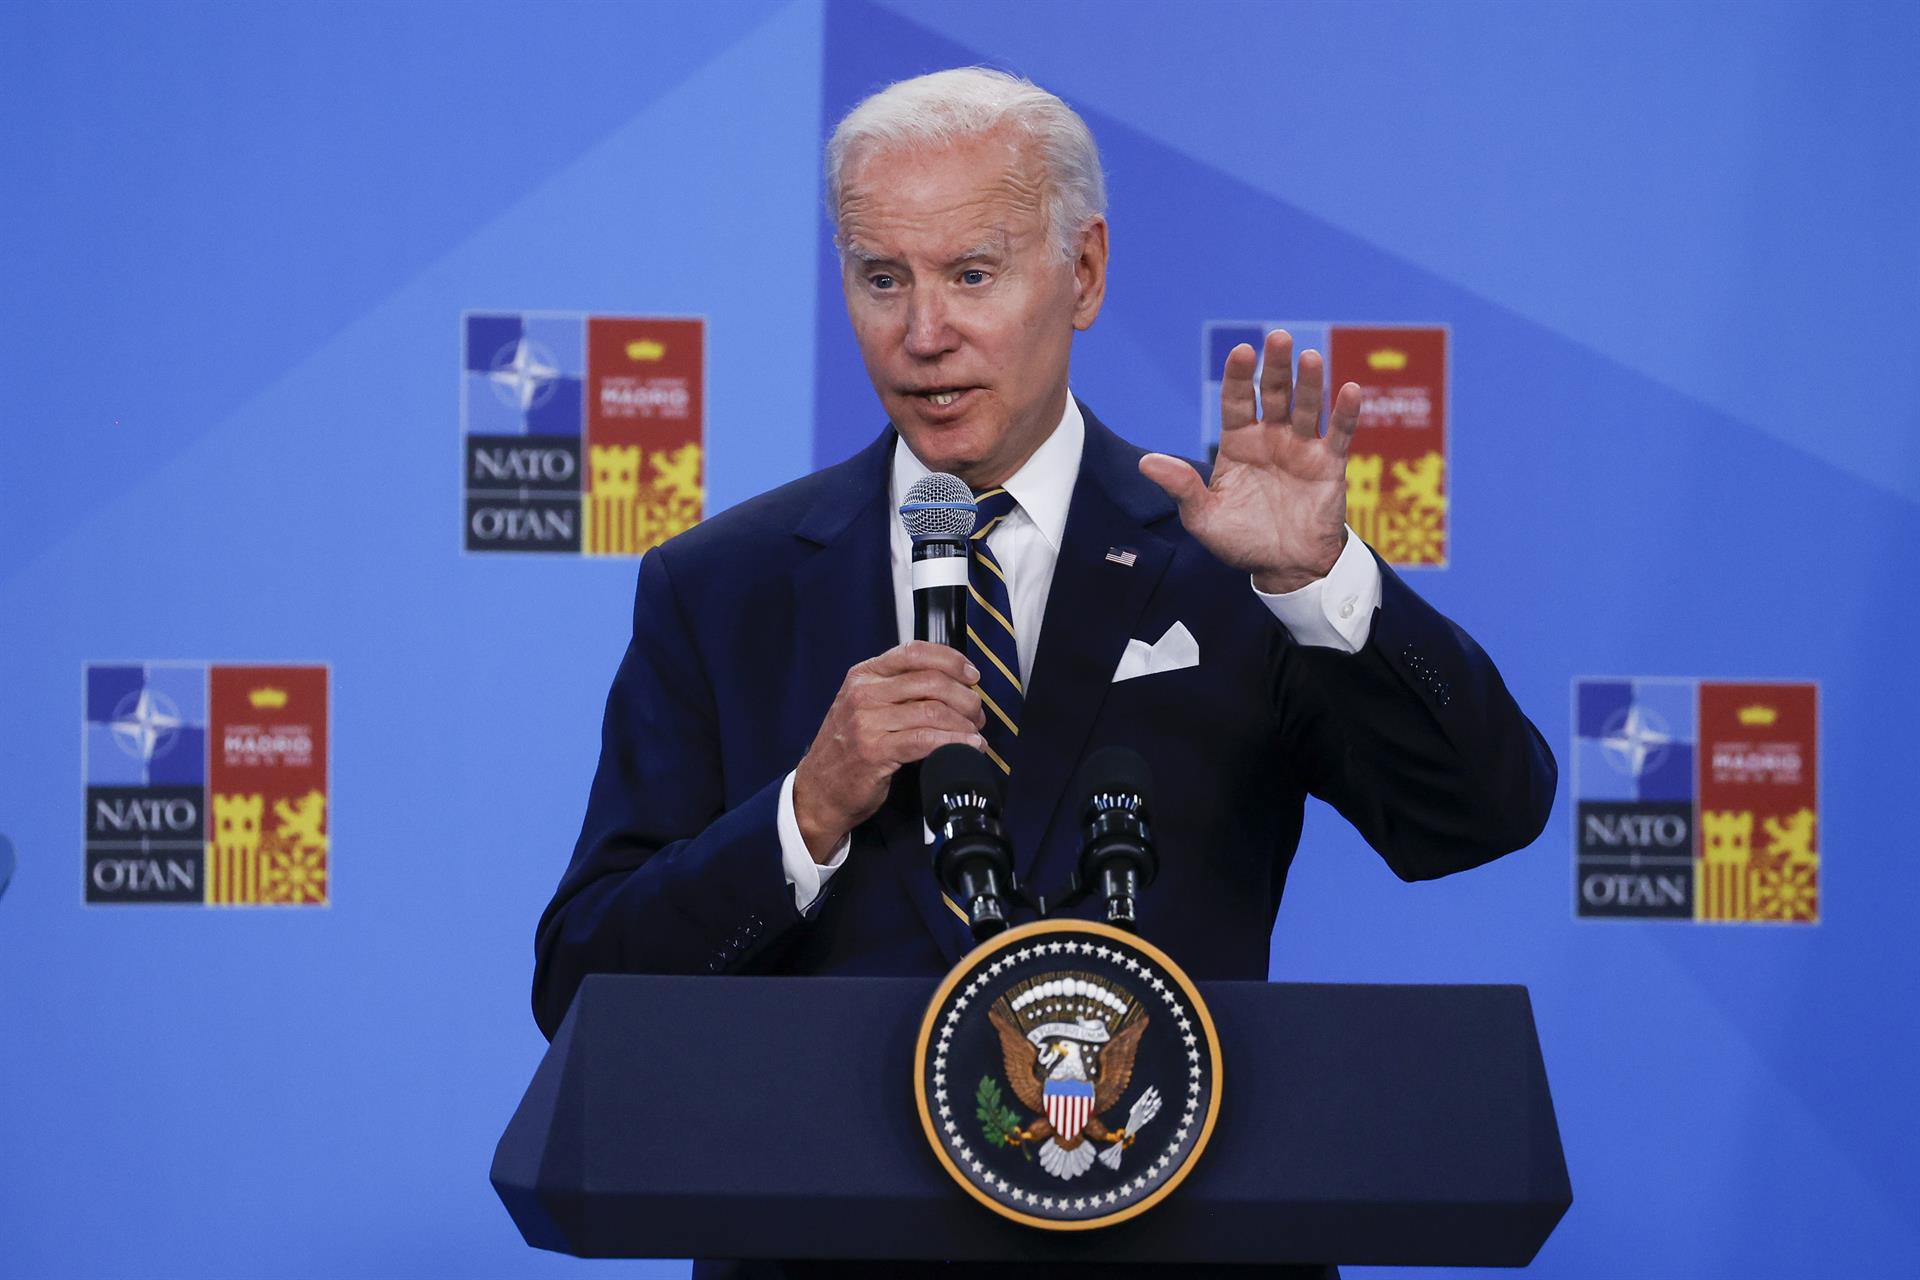 “Dios mío, me estoy poniendo nervioso”: El lapsus de Joe Biden durante la cumbre de la Otan (VIDEO)